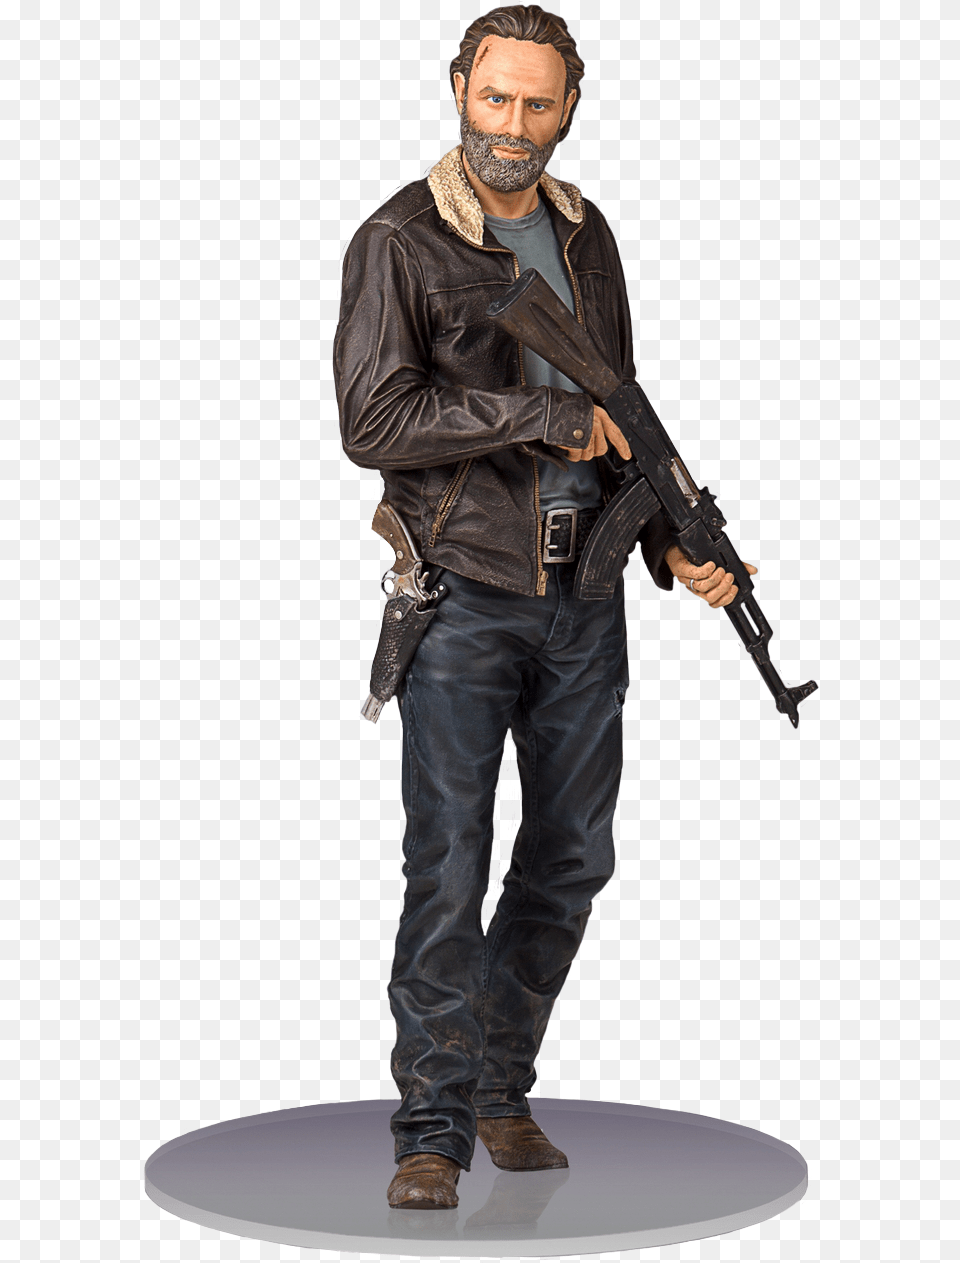 The Walking Dead Rick Grimes Season 5 Statue, Weapon, Jacket, Firearm, Coat Free Png